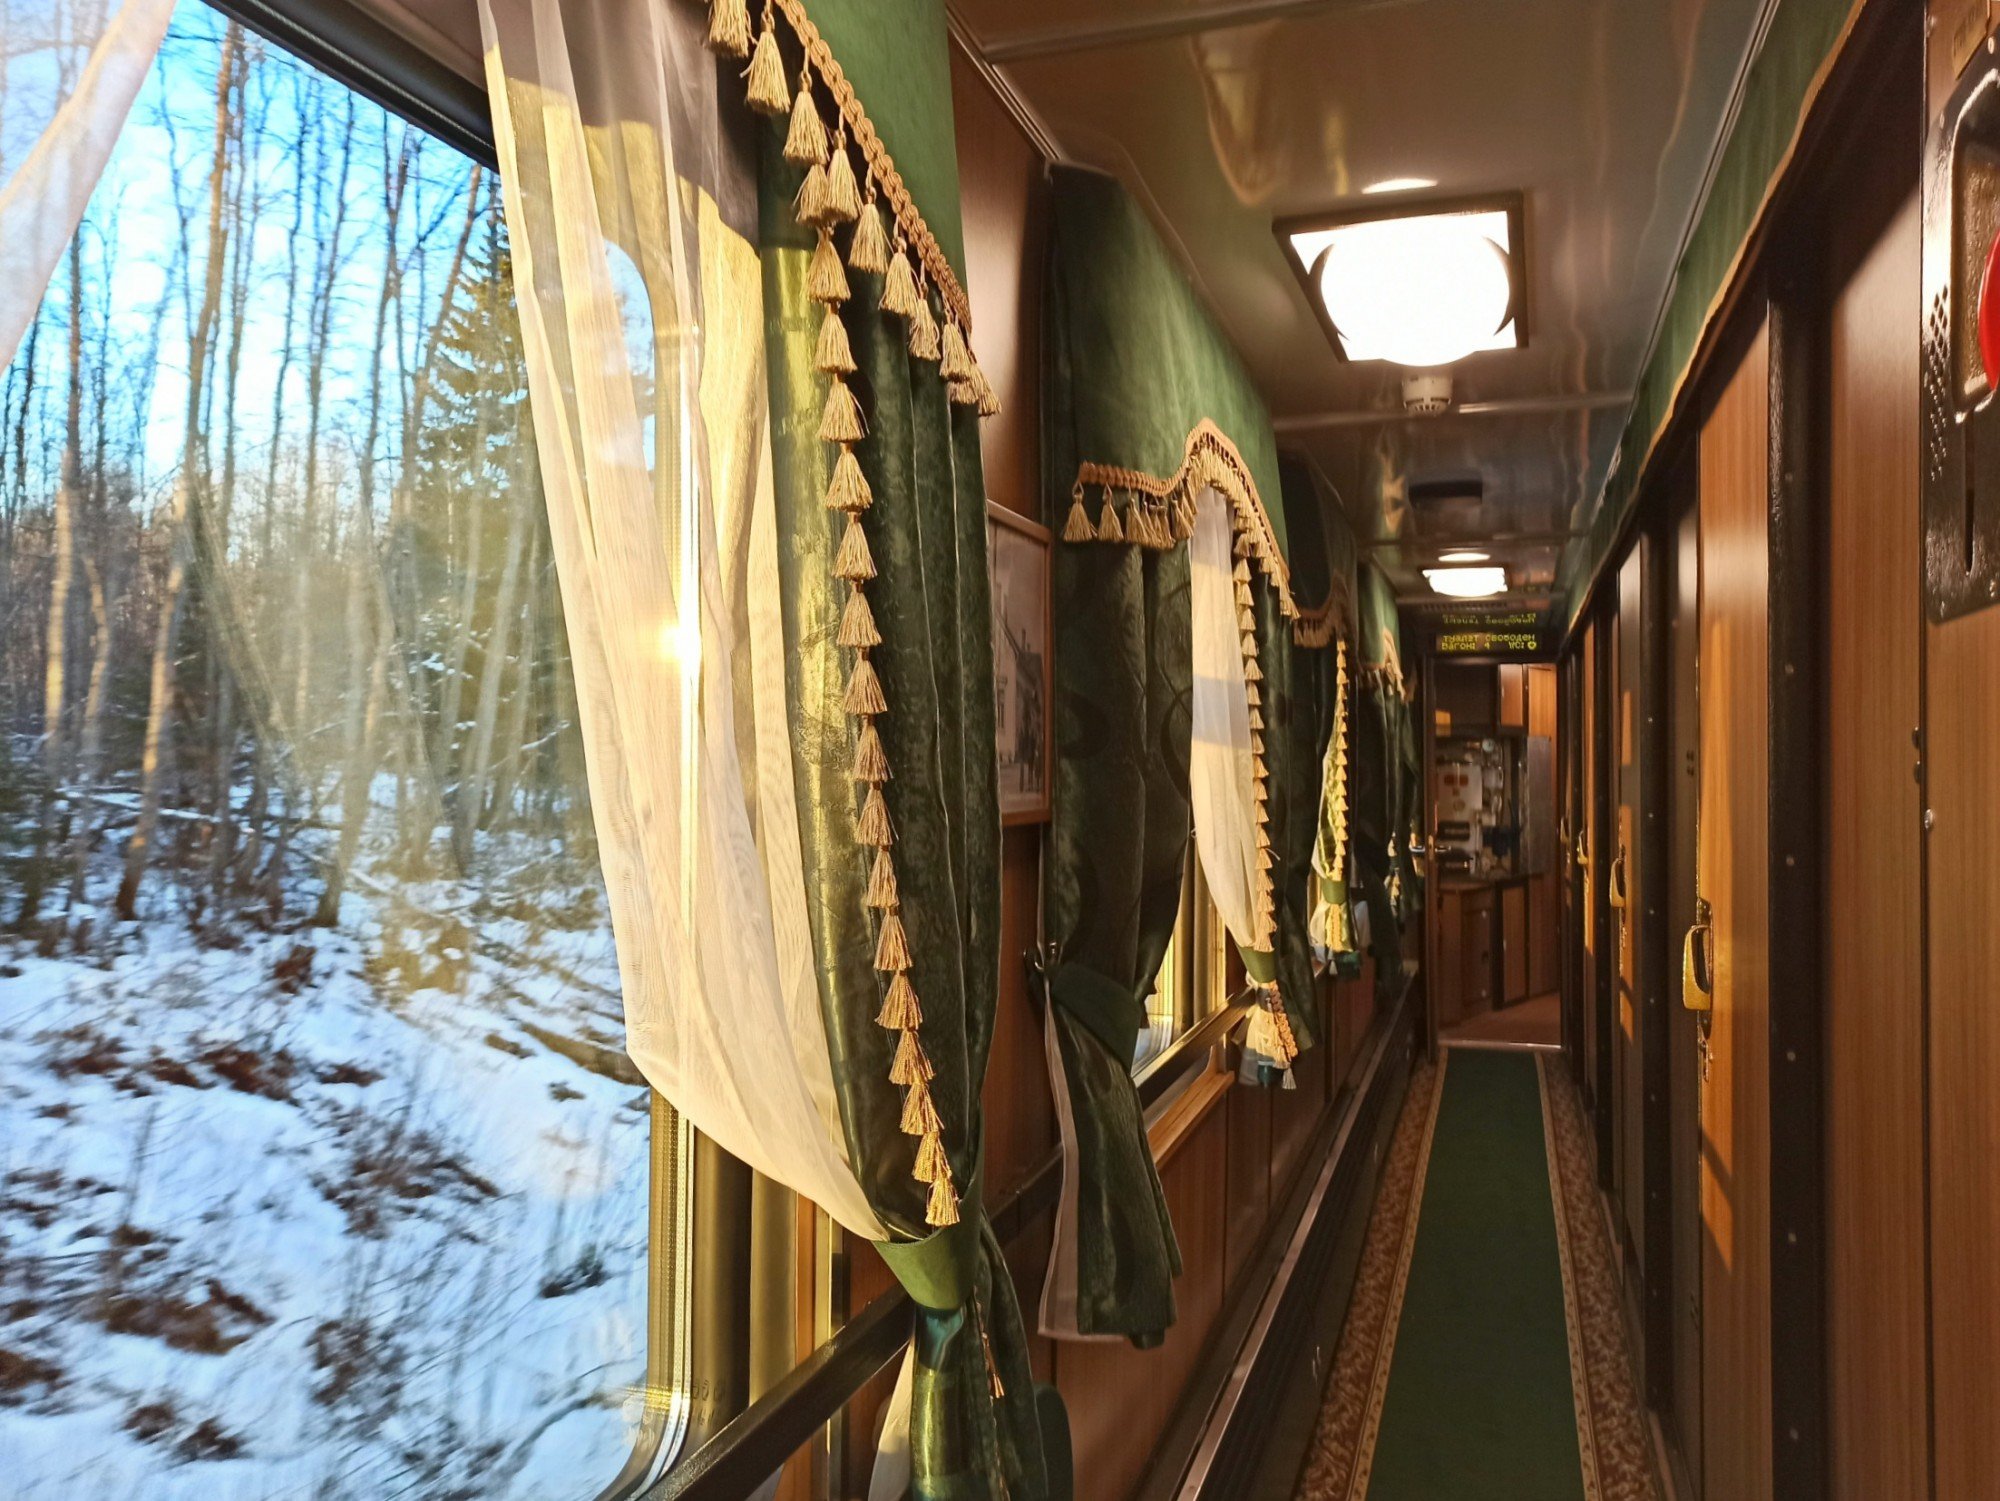 Билеты на поезд москва сортавала